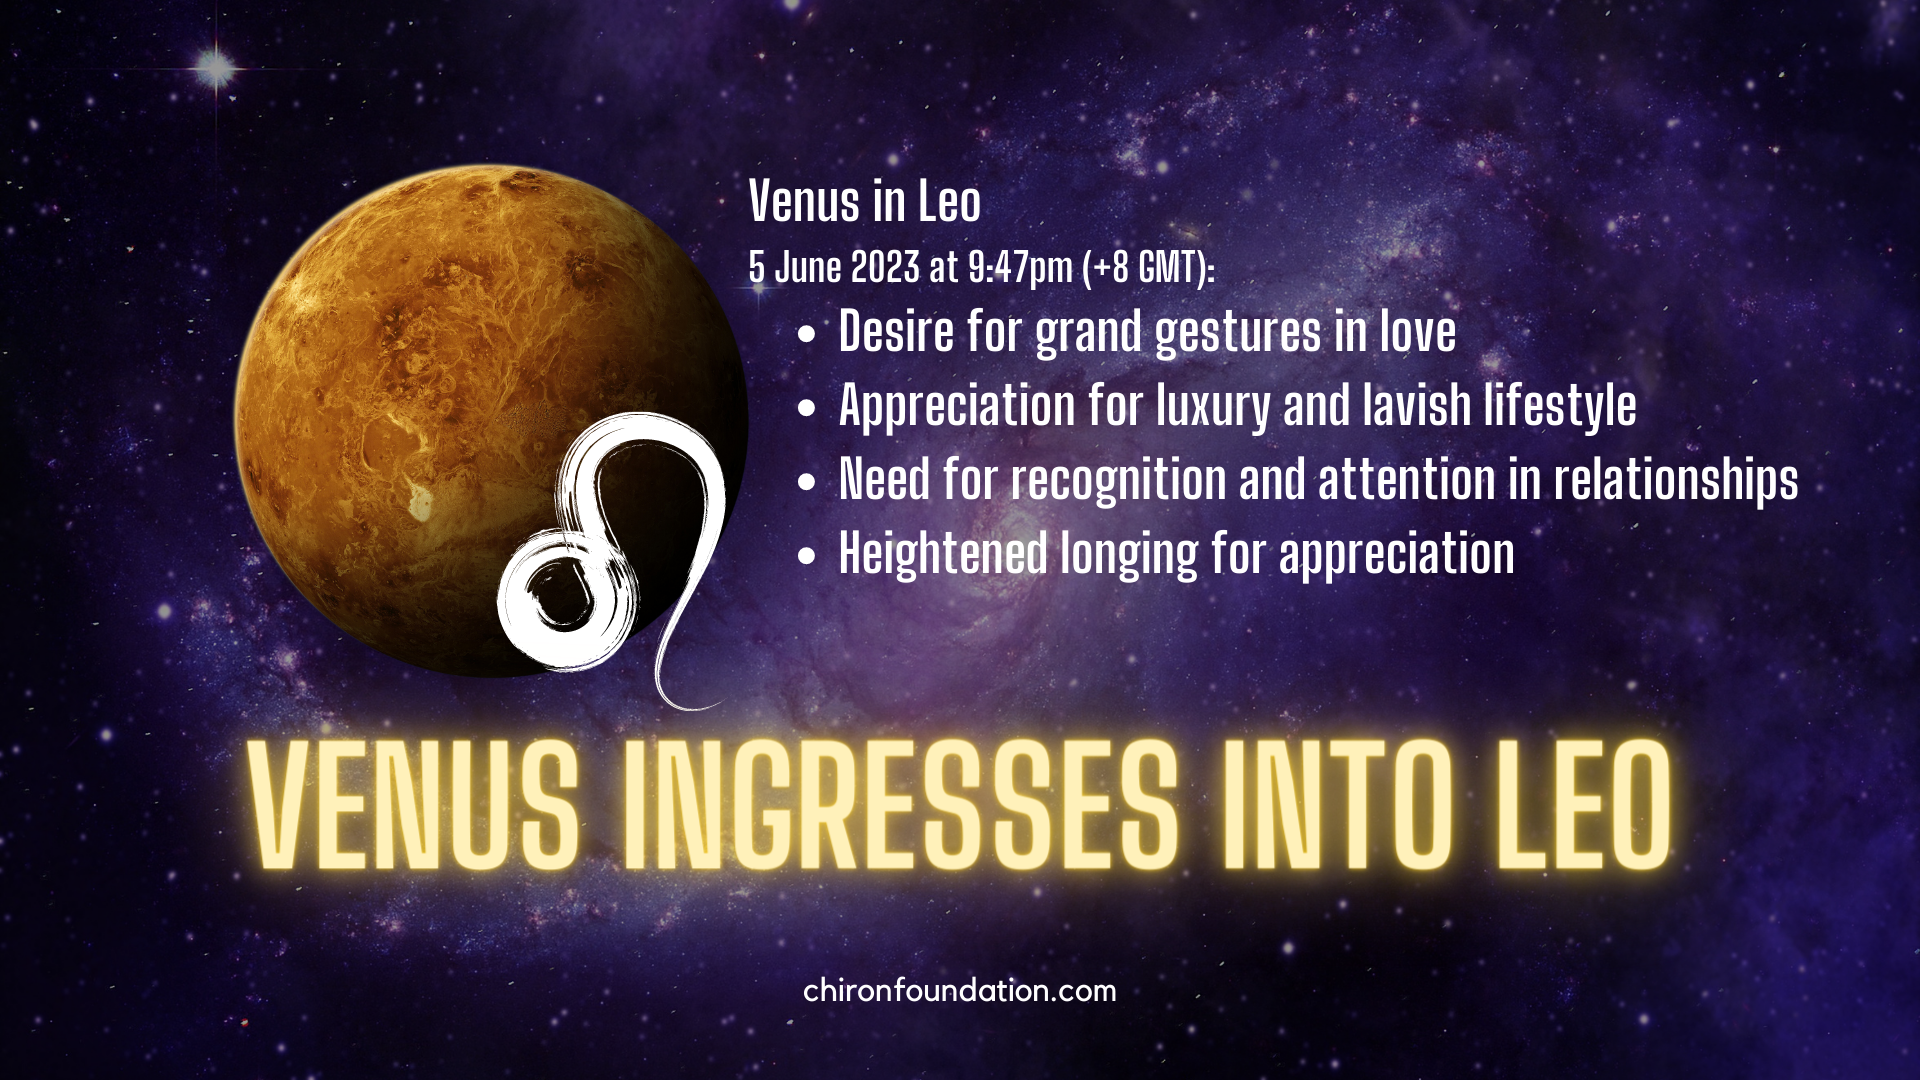 Venus ingresses into Leo